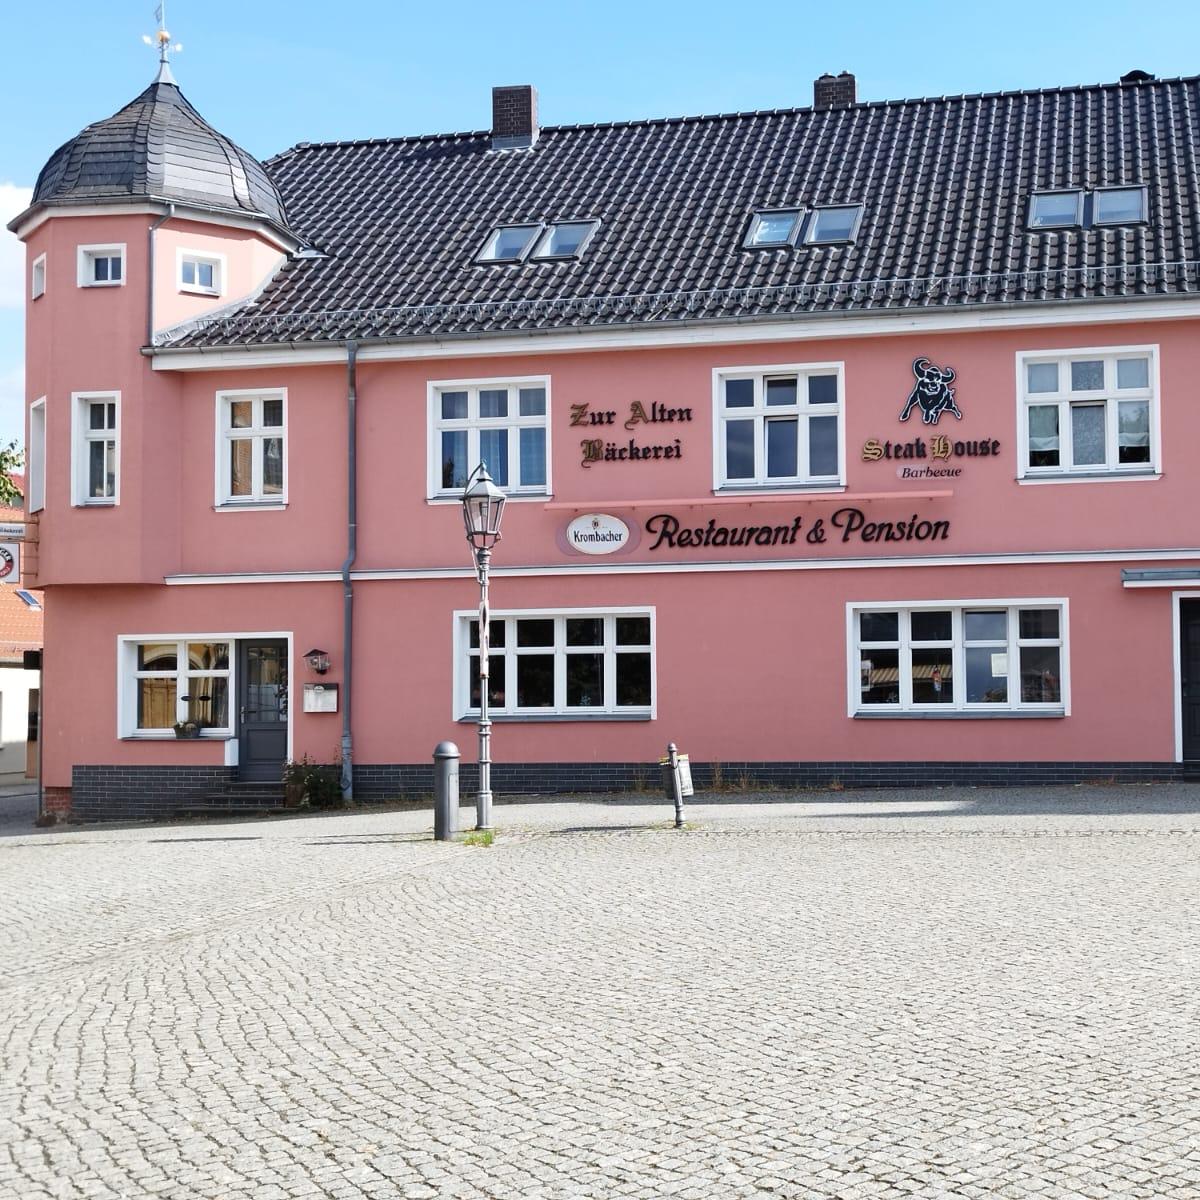 Restaurant "Pension Zur alten Bäckerei" in Golßen